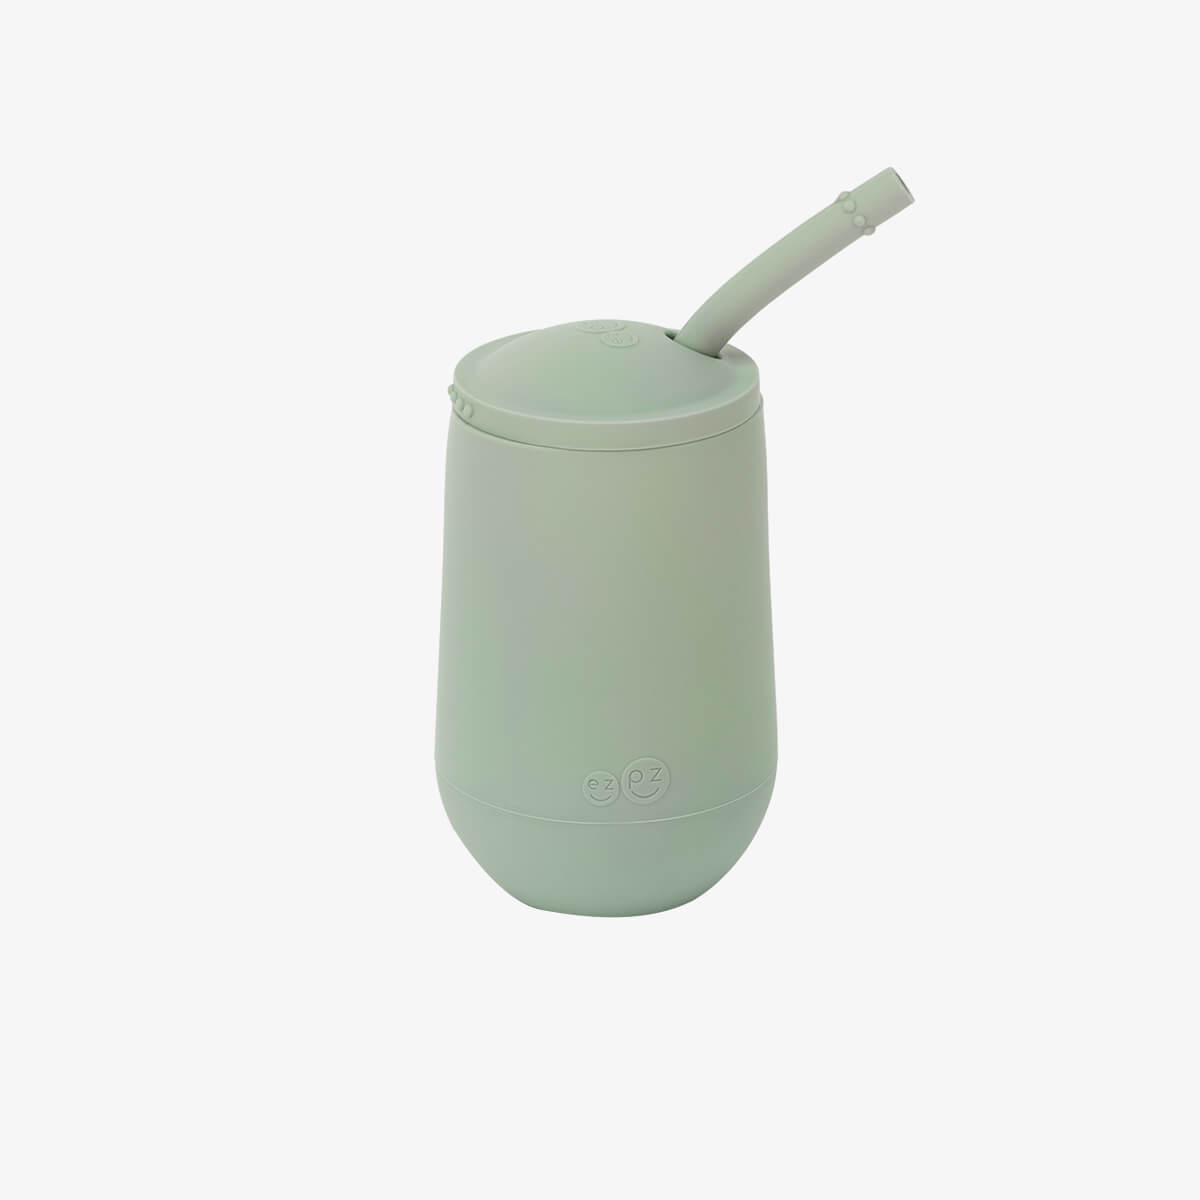 Happy Cup + Straw System by ezpz